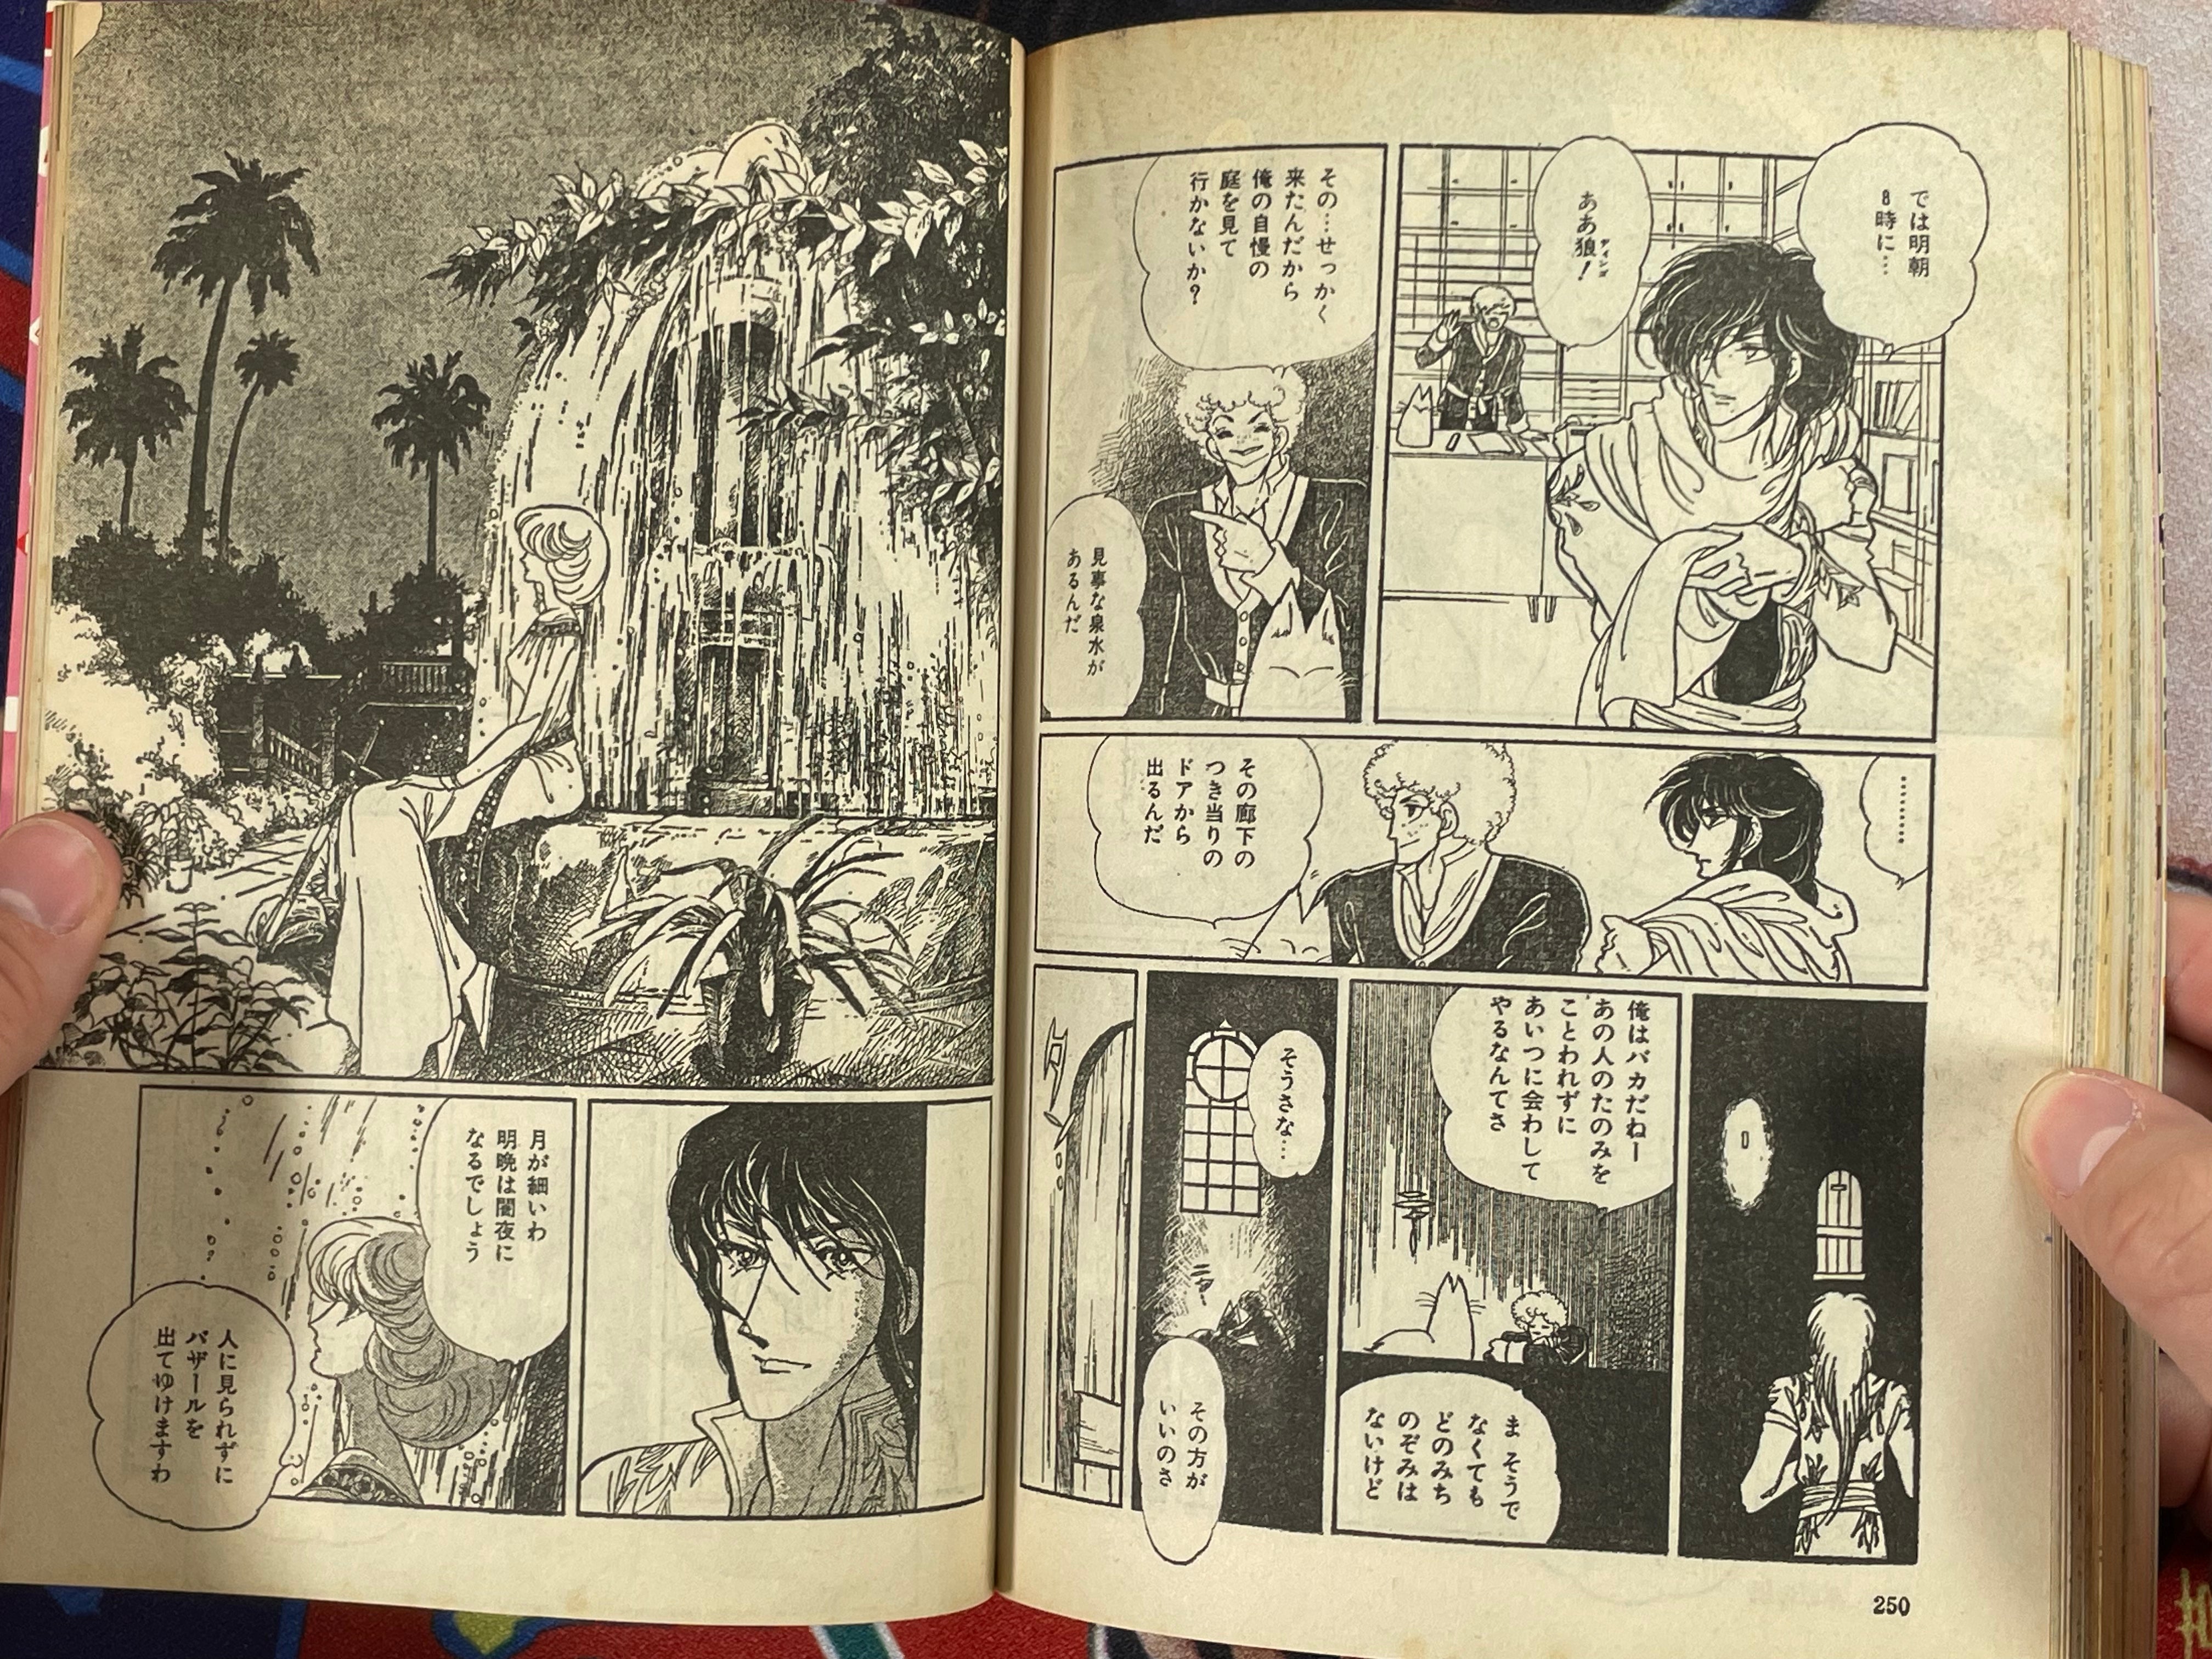 SF Manga Kyosaku Big Collection Magazine Part 27 - 9/1984